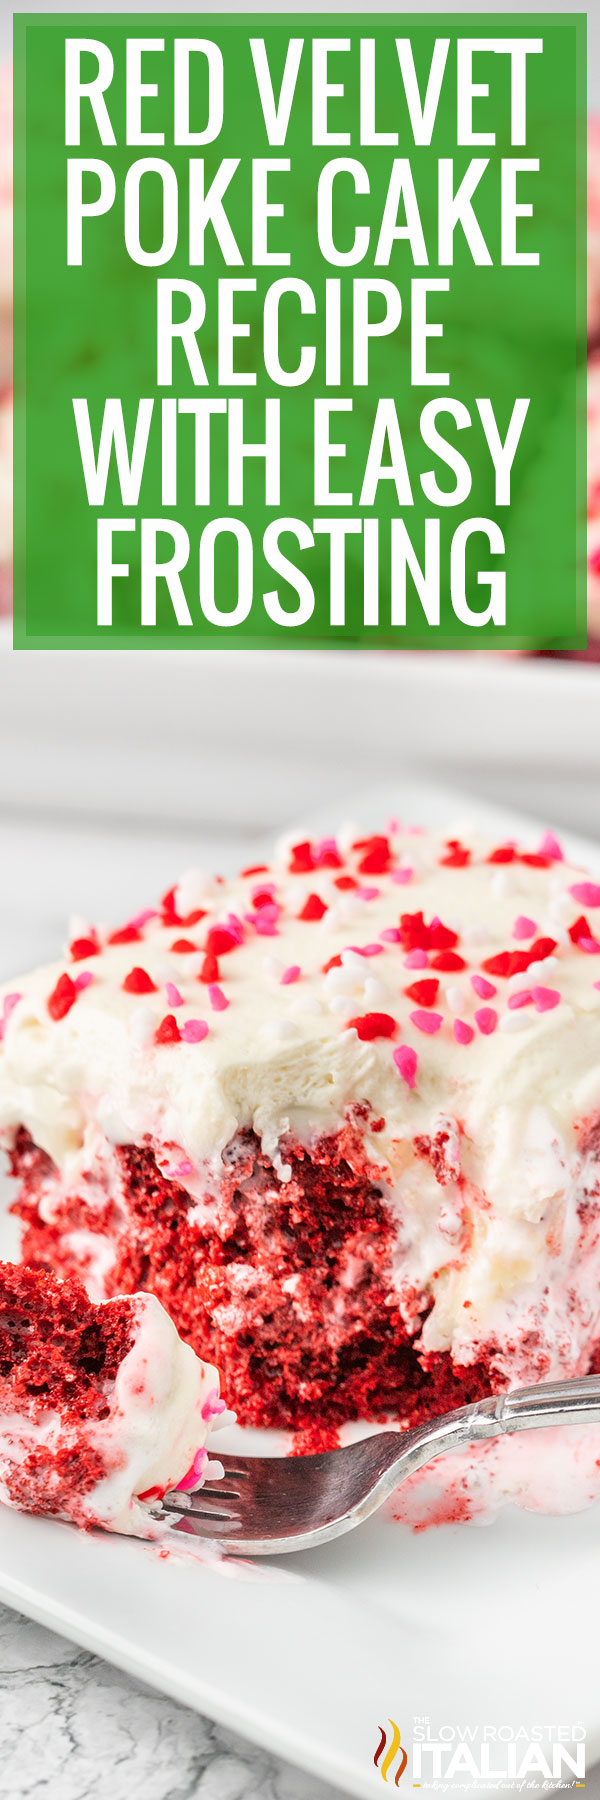 Red Velvet Poke Cake With Easy Frosting